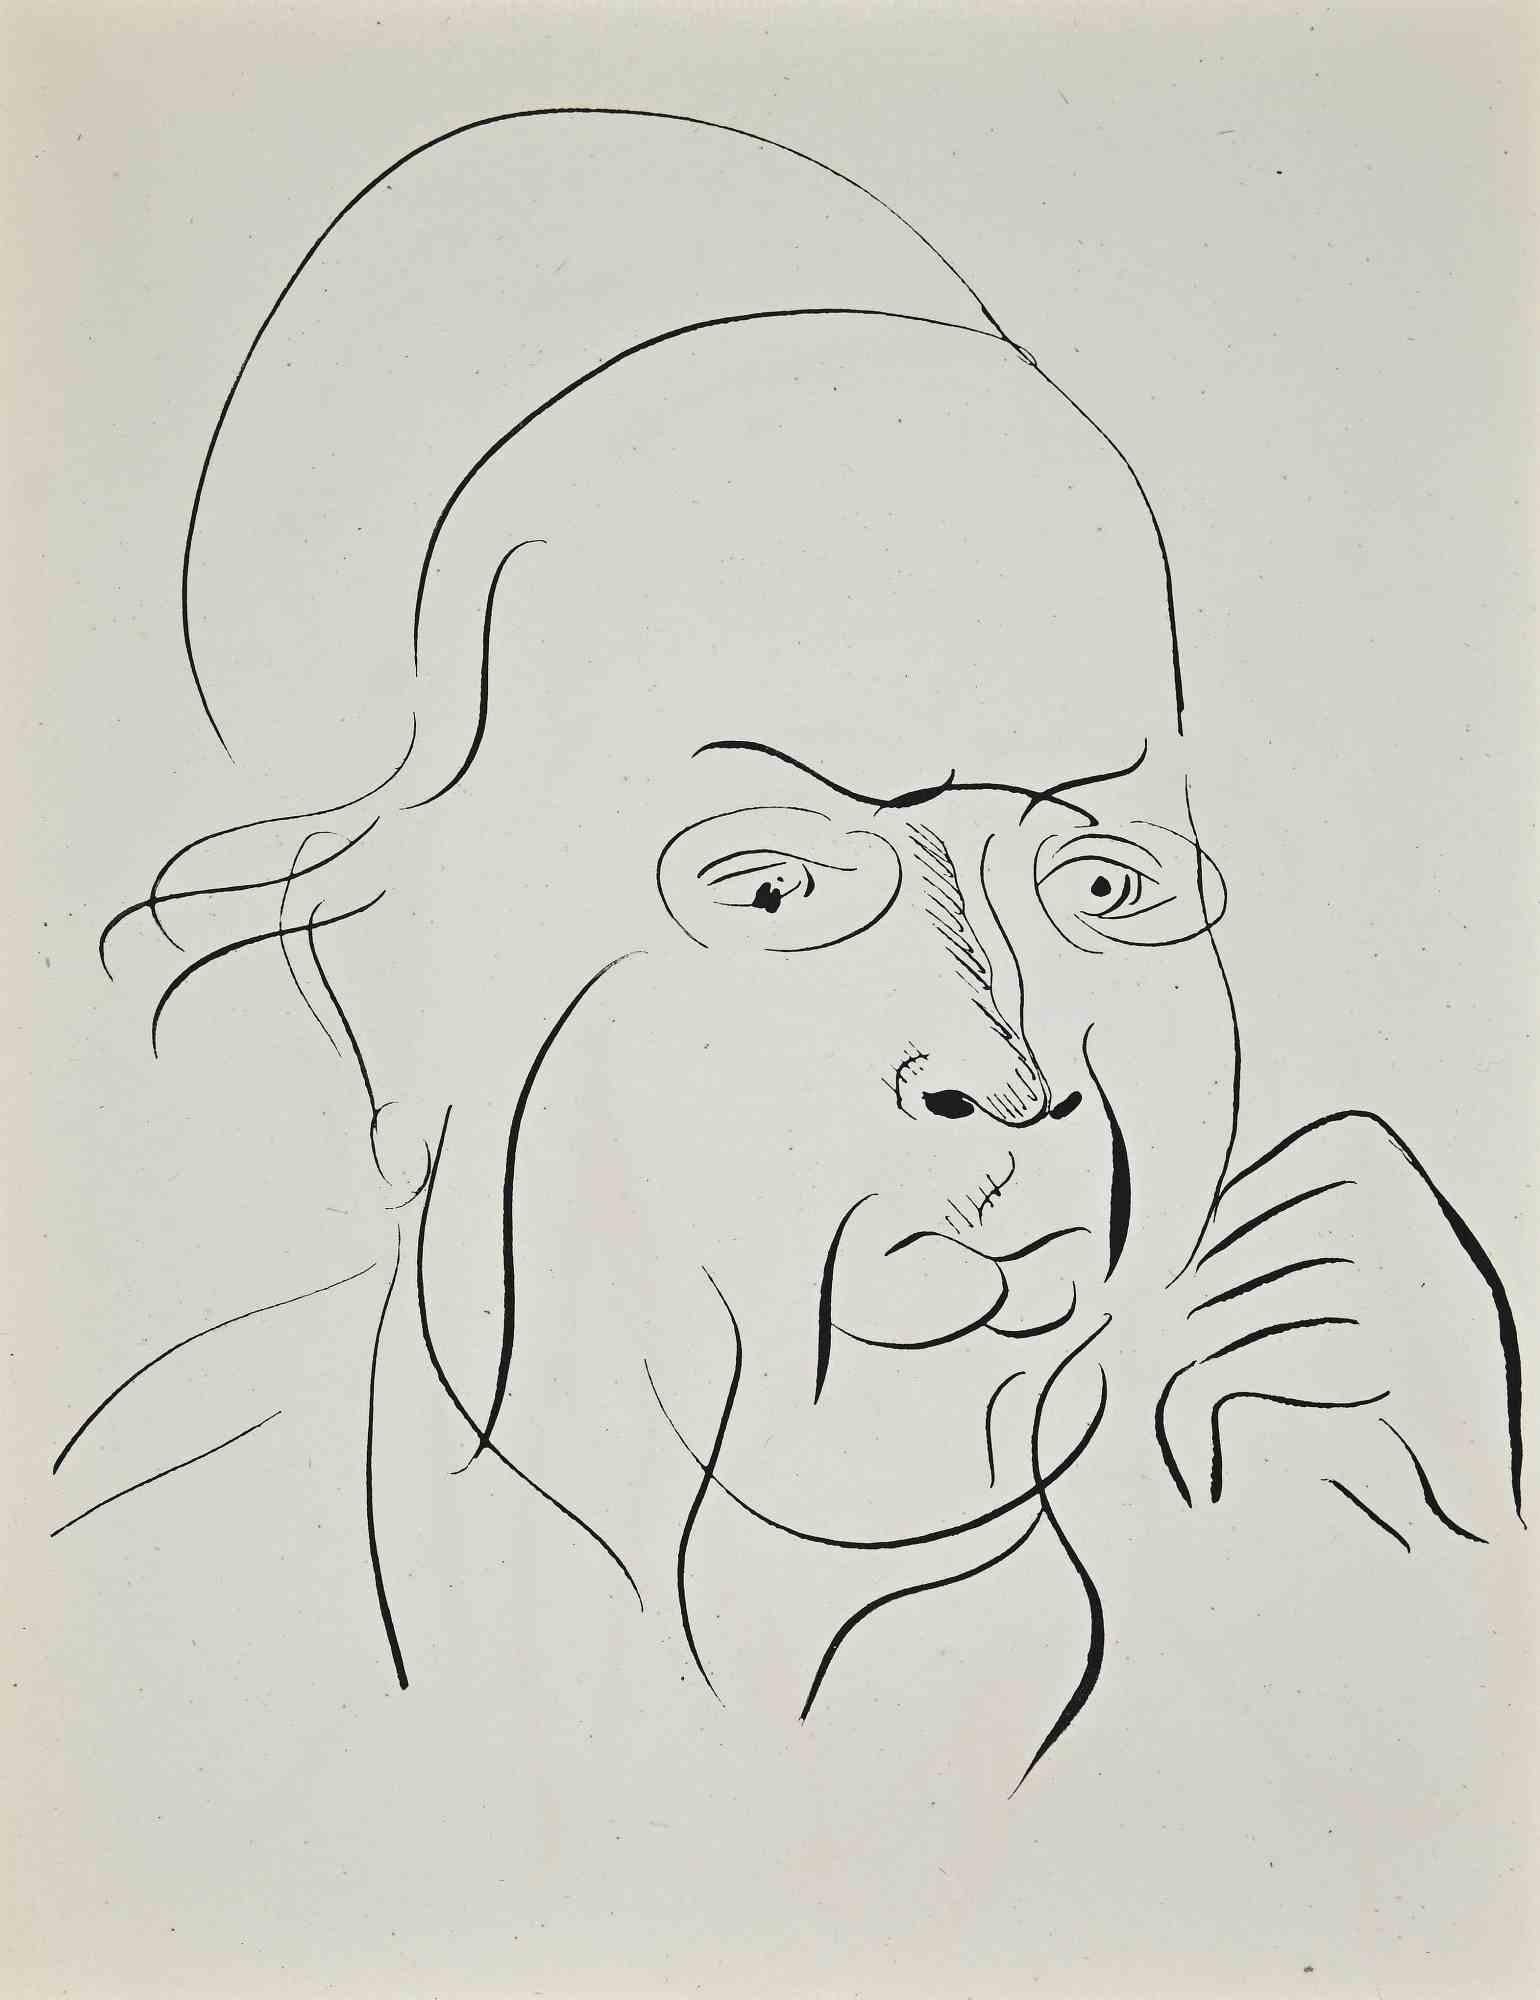 Study for Self-portrait ist eine Original-Lithographie von Raoul Dufy aus den 1930er Jahren.

Gute Bedingungen.

Keine Unterschrift.

Raoul Dufy (3. Juni 1877 - 23. März 1953) war ein französischer Maler des Fauvismus und Bruder von Jean Dufy. Er